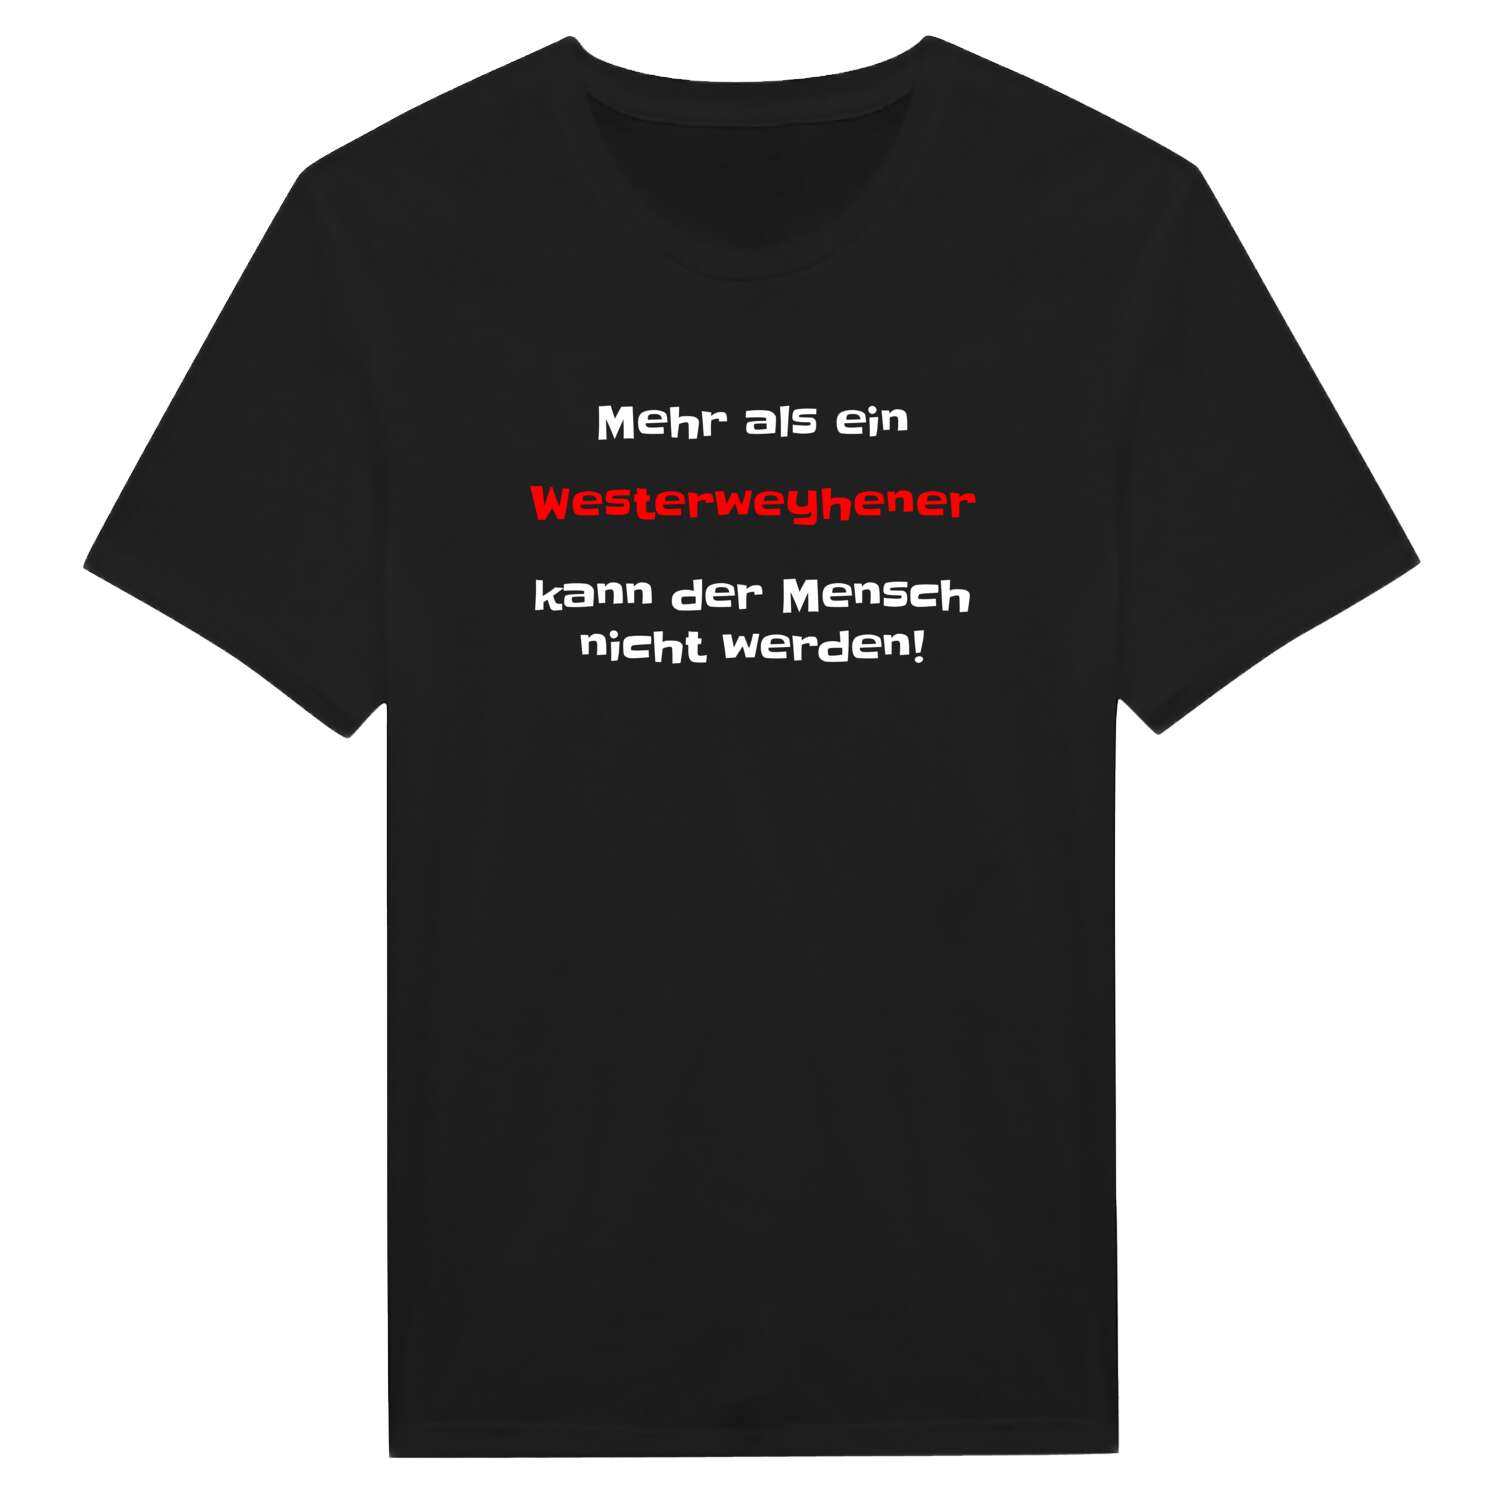 Westerweyhe T-Shirt »Mehr als ein«